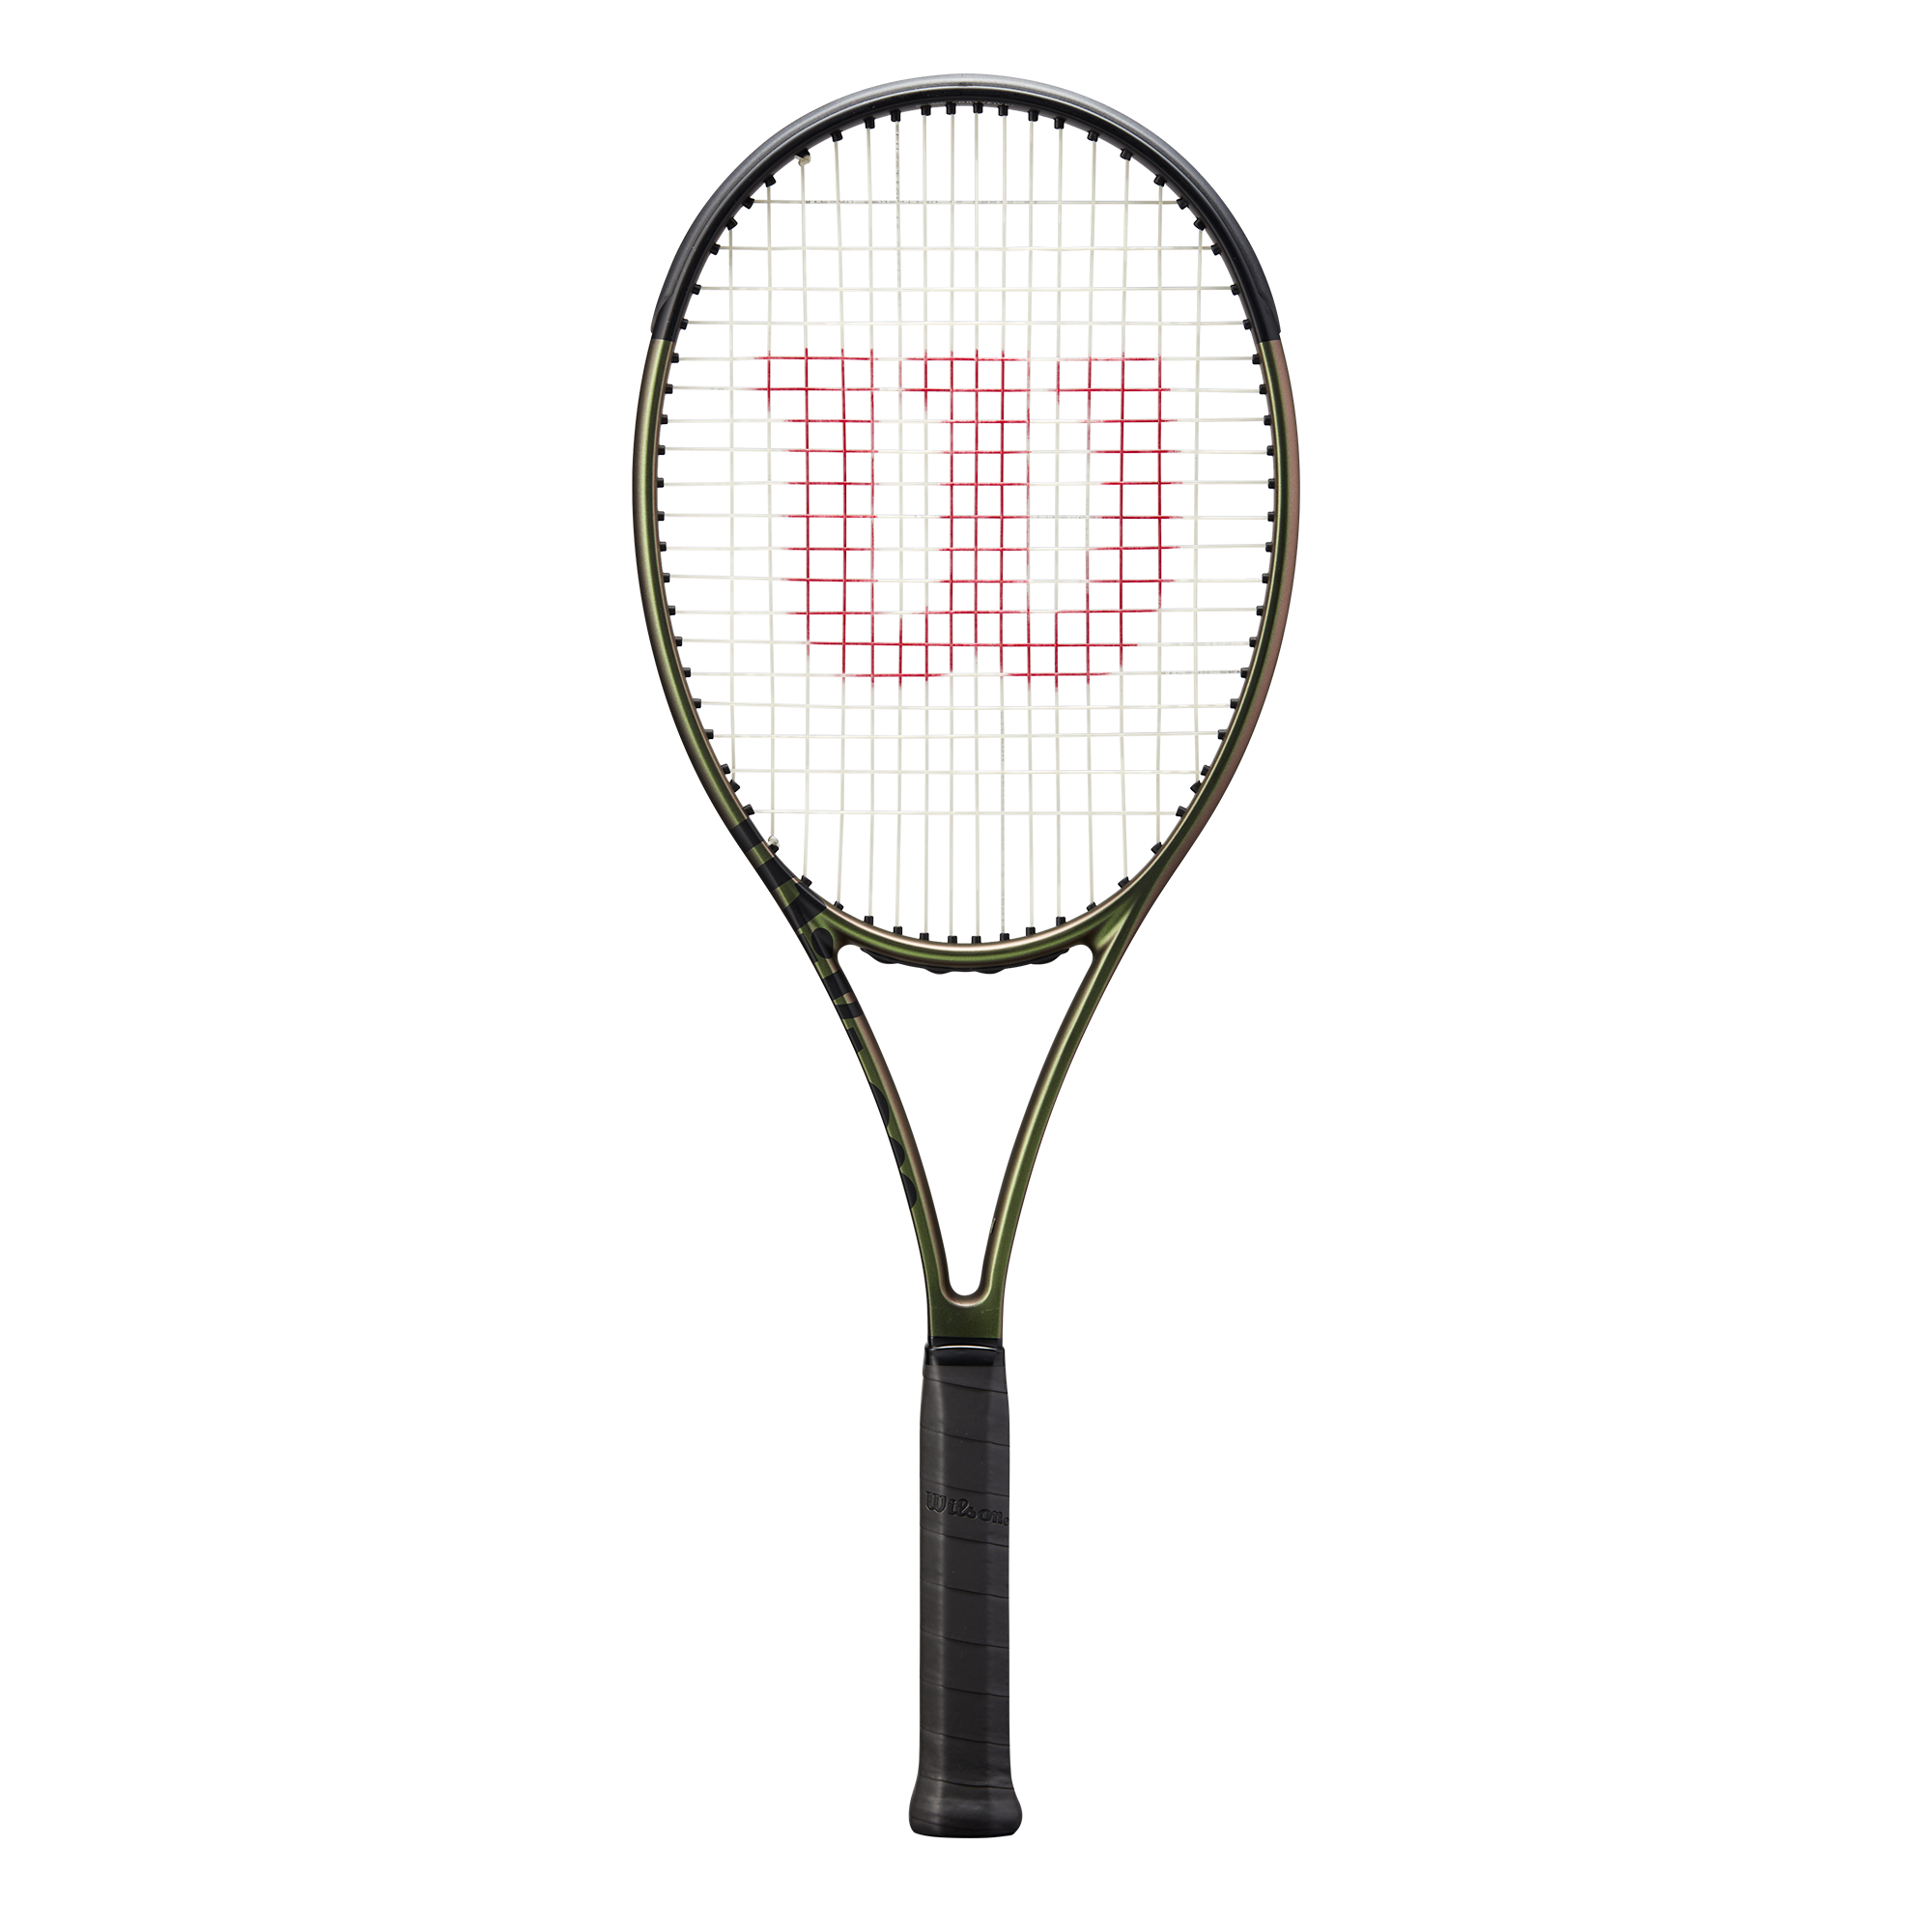 Wilson Blade 98 16x19 V8 Tennis Racquet